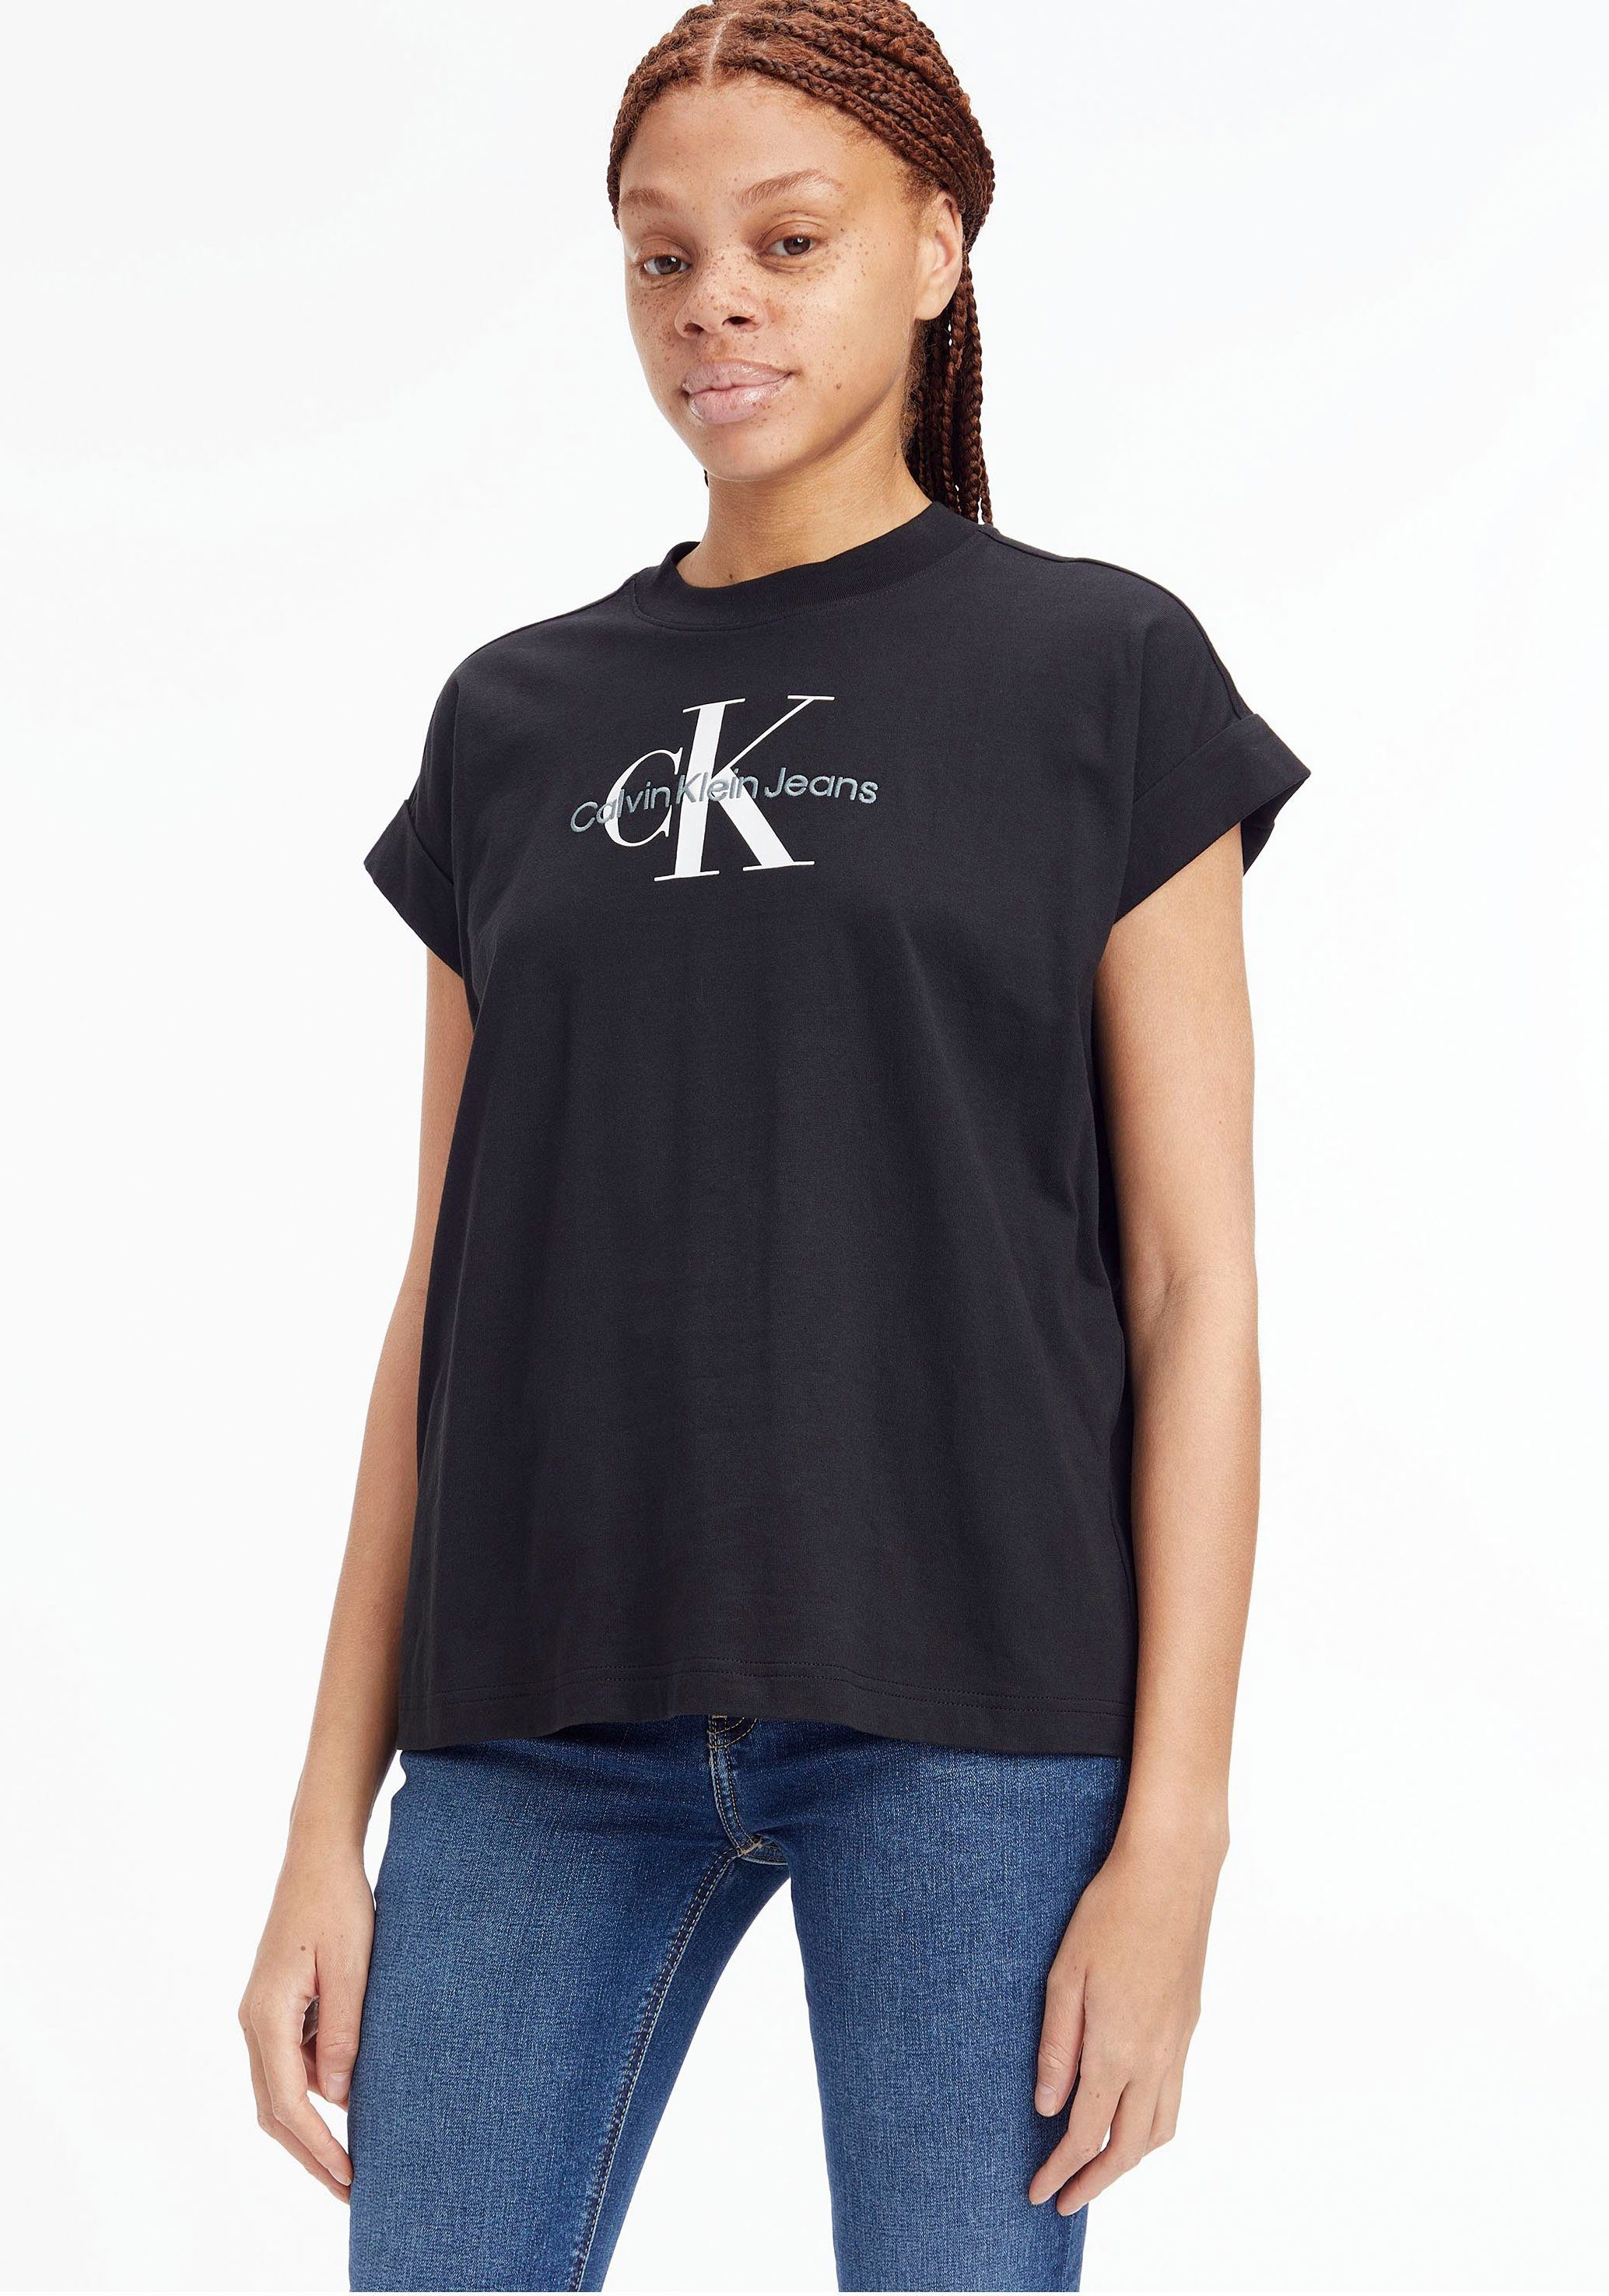 Calvin Klein Logoshirts für Damen kaufen » CK Logoshirts